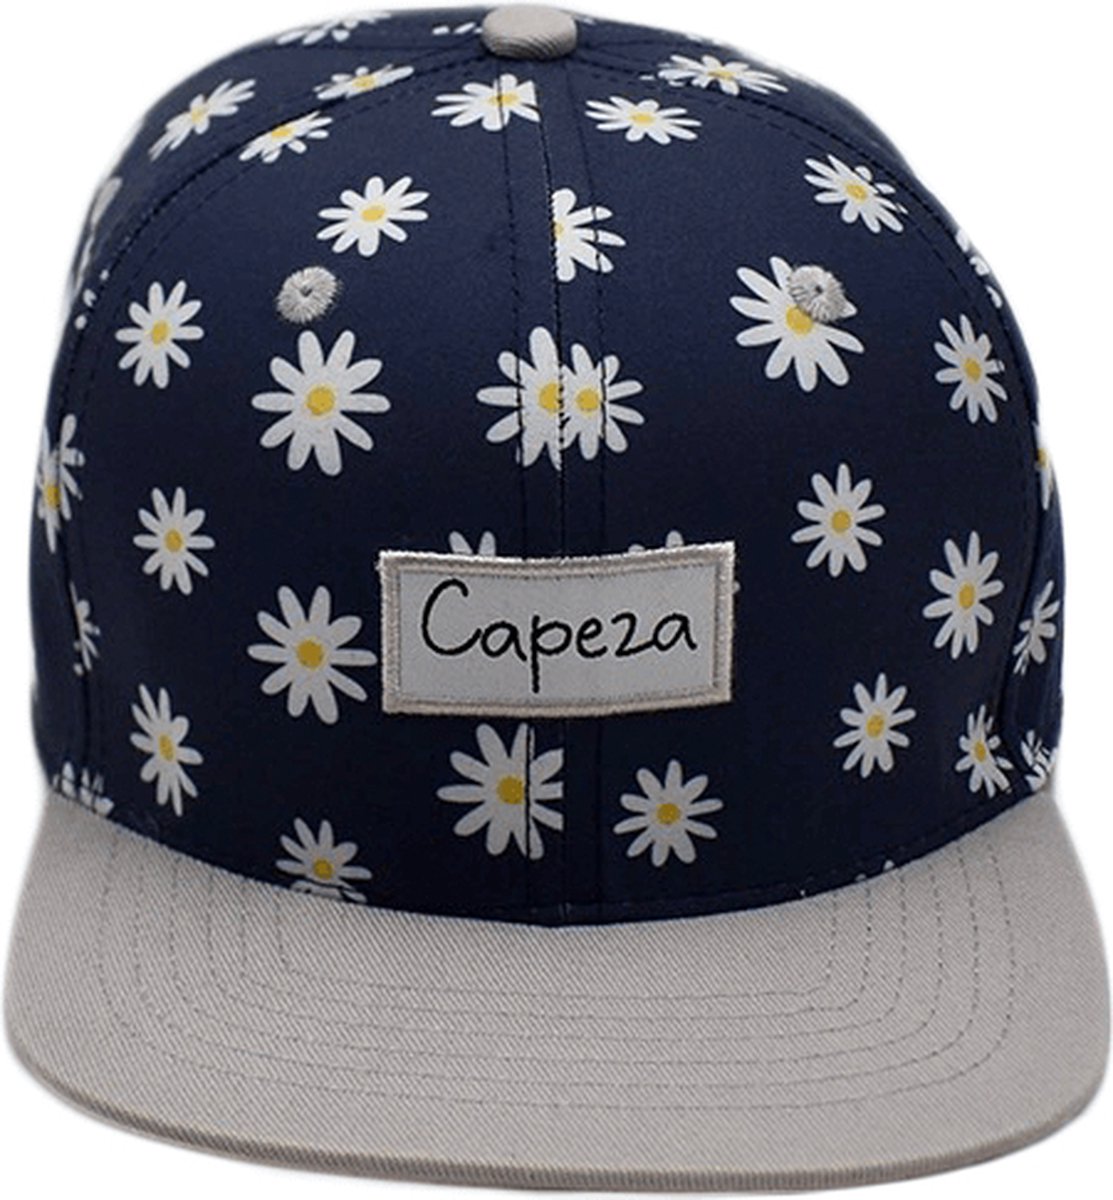 Capeza - Camélia - Kind 6 jaar en hoger - Snapback kind - Kinderpet - Zomerpet - Pet voor kinderen - snapback cap